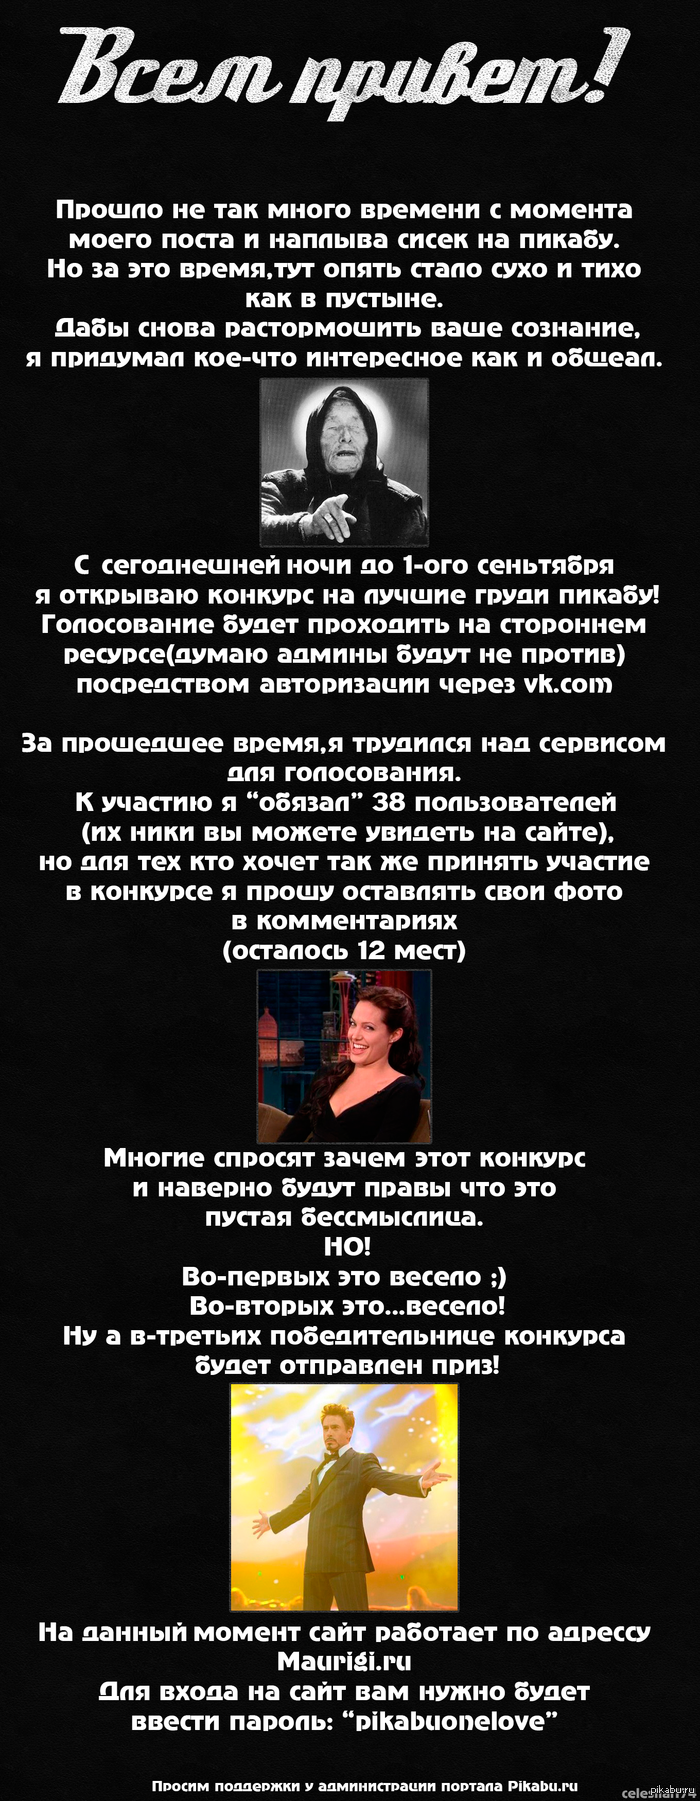 Сиськи-2012. Выбор девушки года